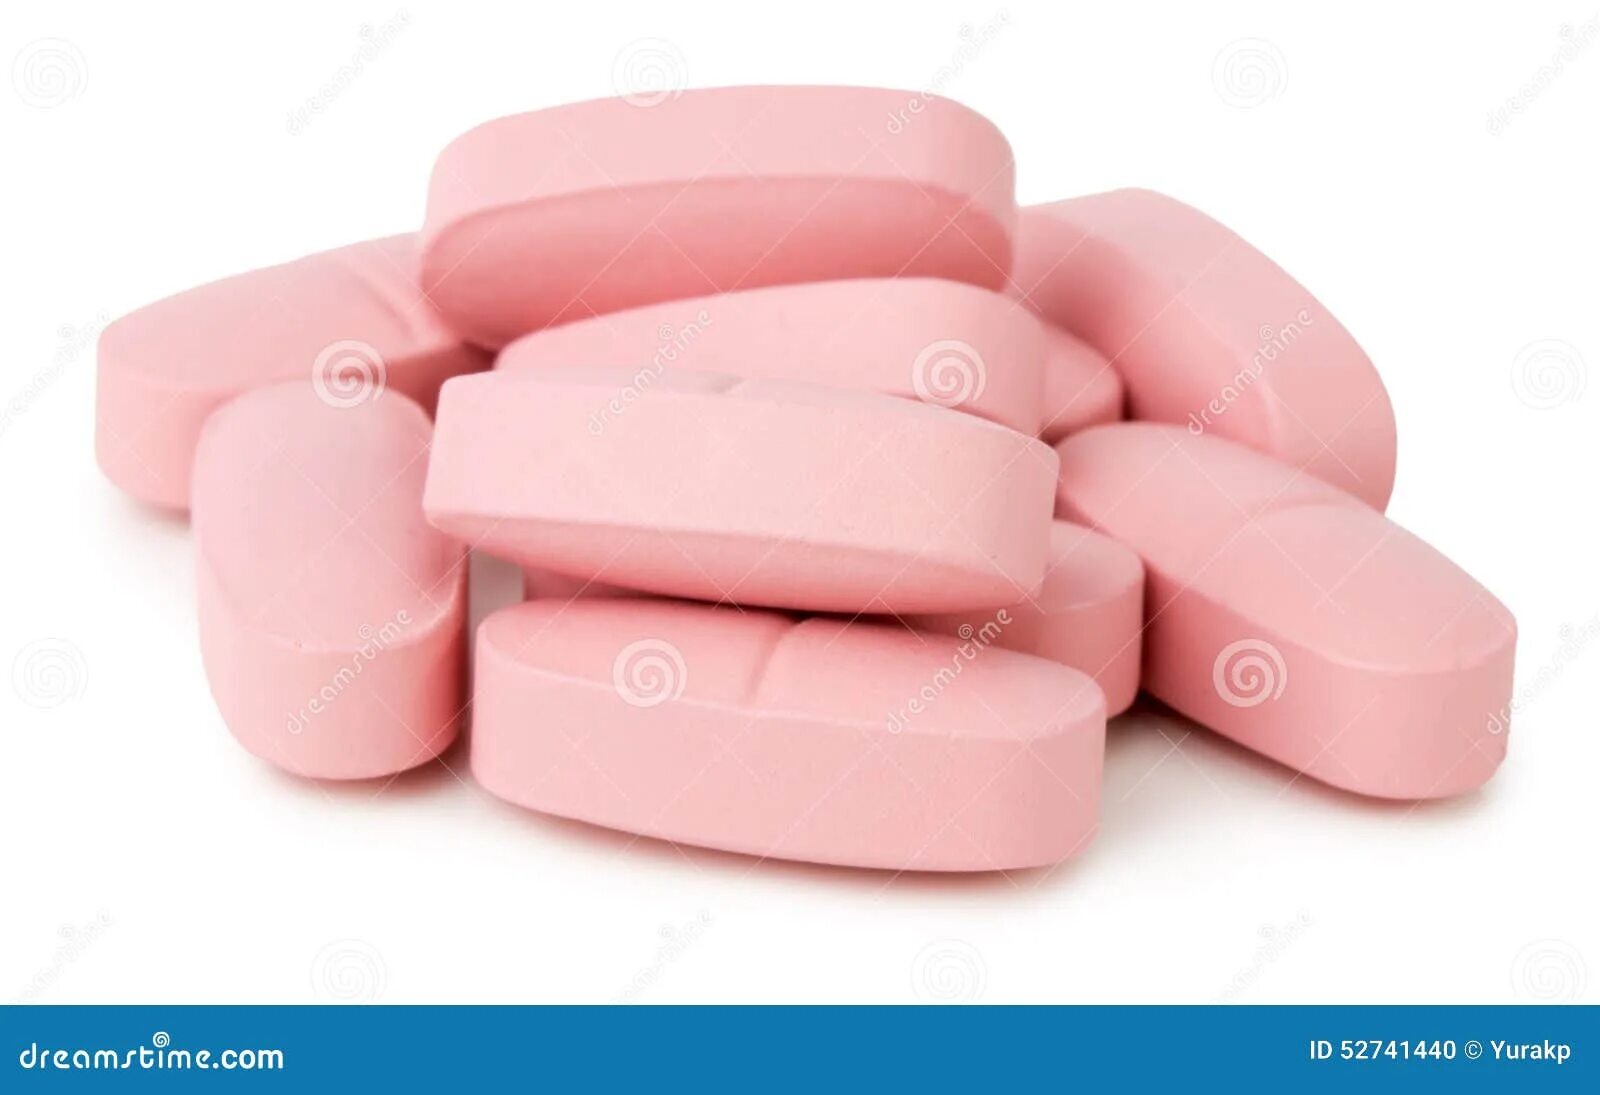 Розовые таблетки название. Розовые таблетки. Таблетки розового цвета. Большая розовая таблетка. Розовые плоские таблетки.